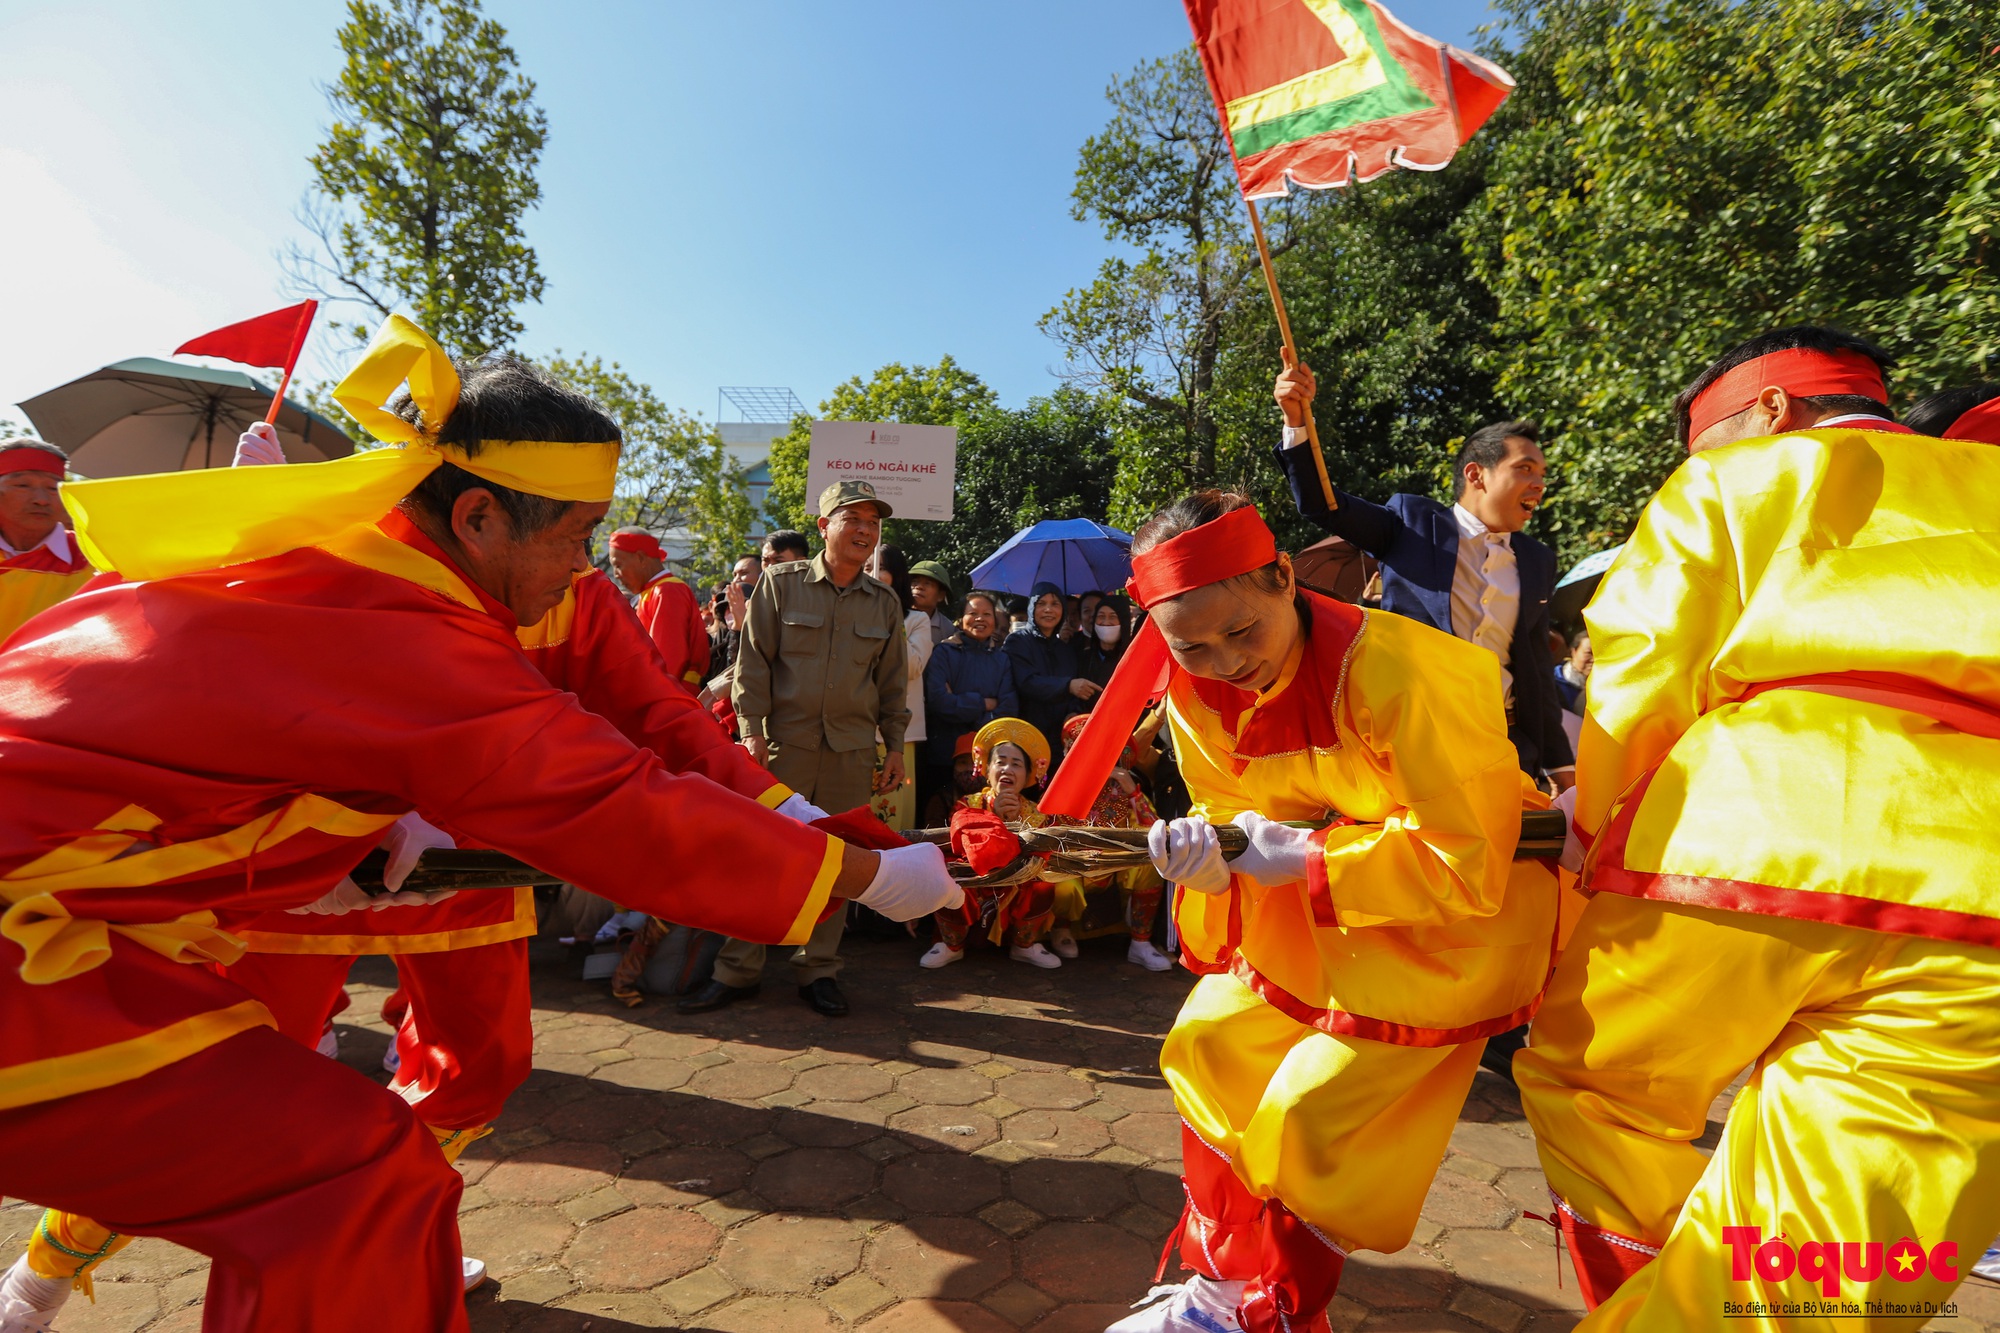 Lần đầu tiên tổ chức liên hoan trình diễn nghi lễ và trò chơi kéo co tại Việt Nam - Ảnh 9.